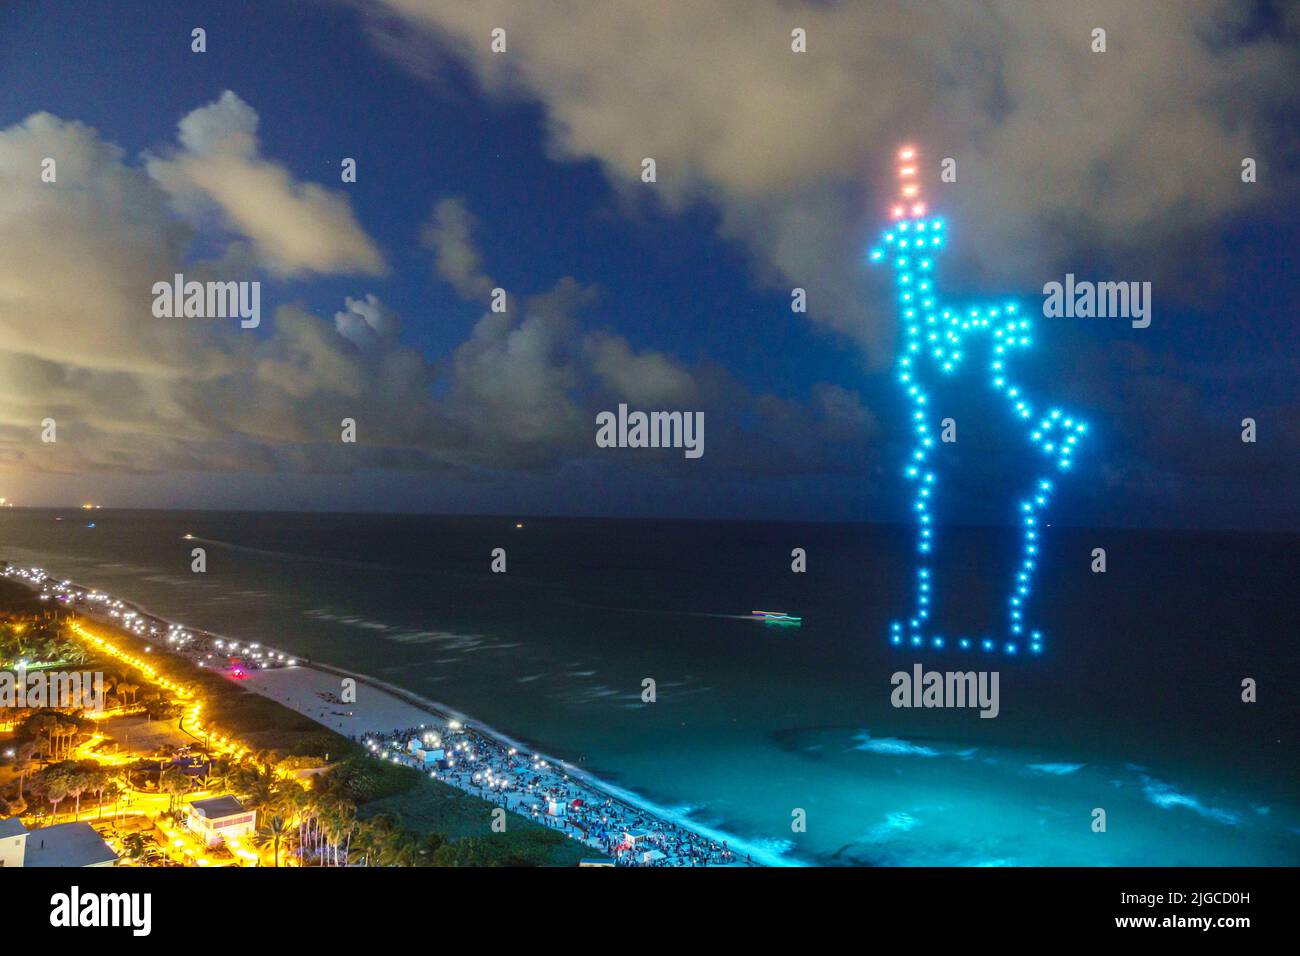 Miami Beach Florida, Ocean Terrace Fire on the Fourth 4th of July Festival event Celebration, droni con spettacolo di luci che formano la Statua della libertà, aereo o Foto Stock